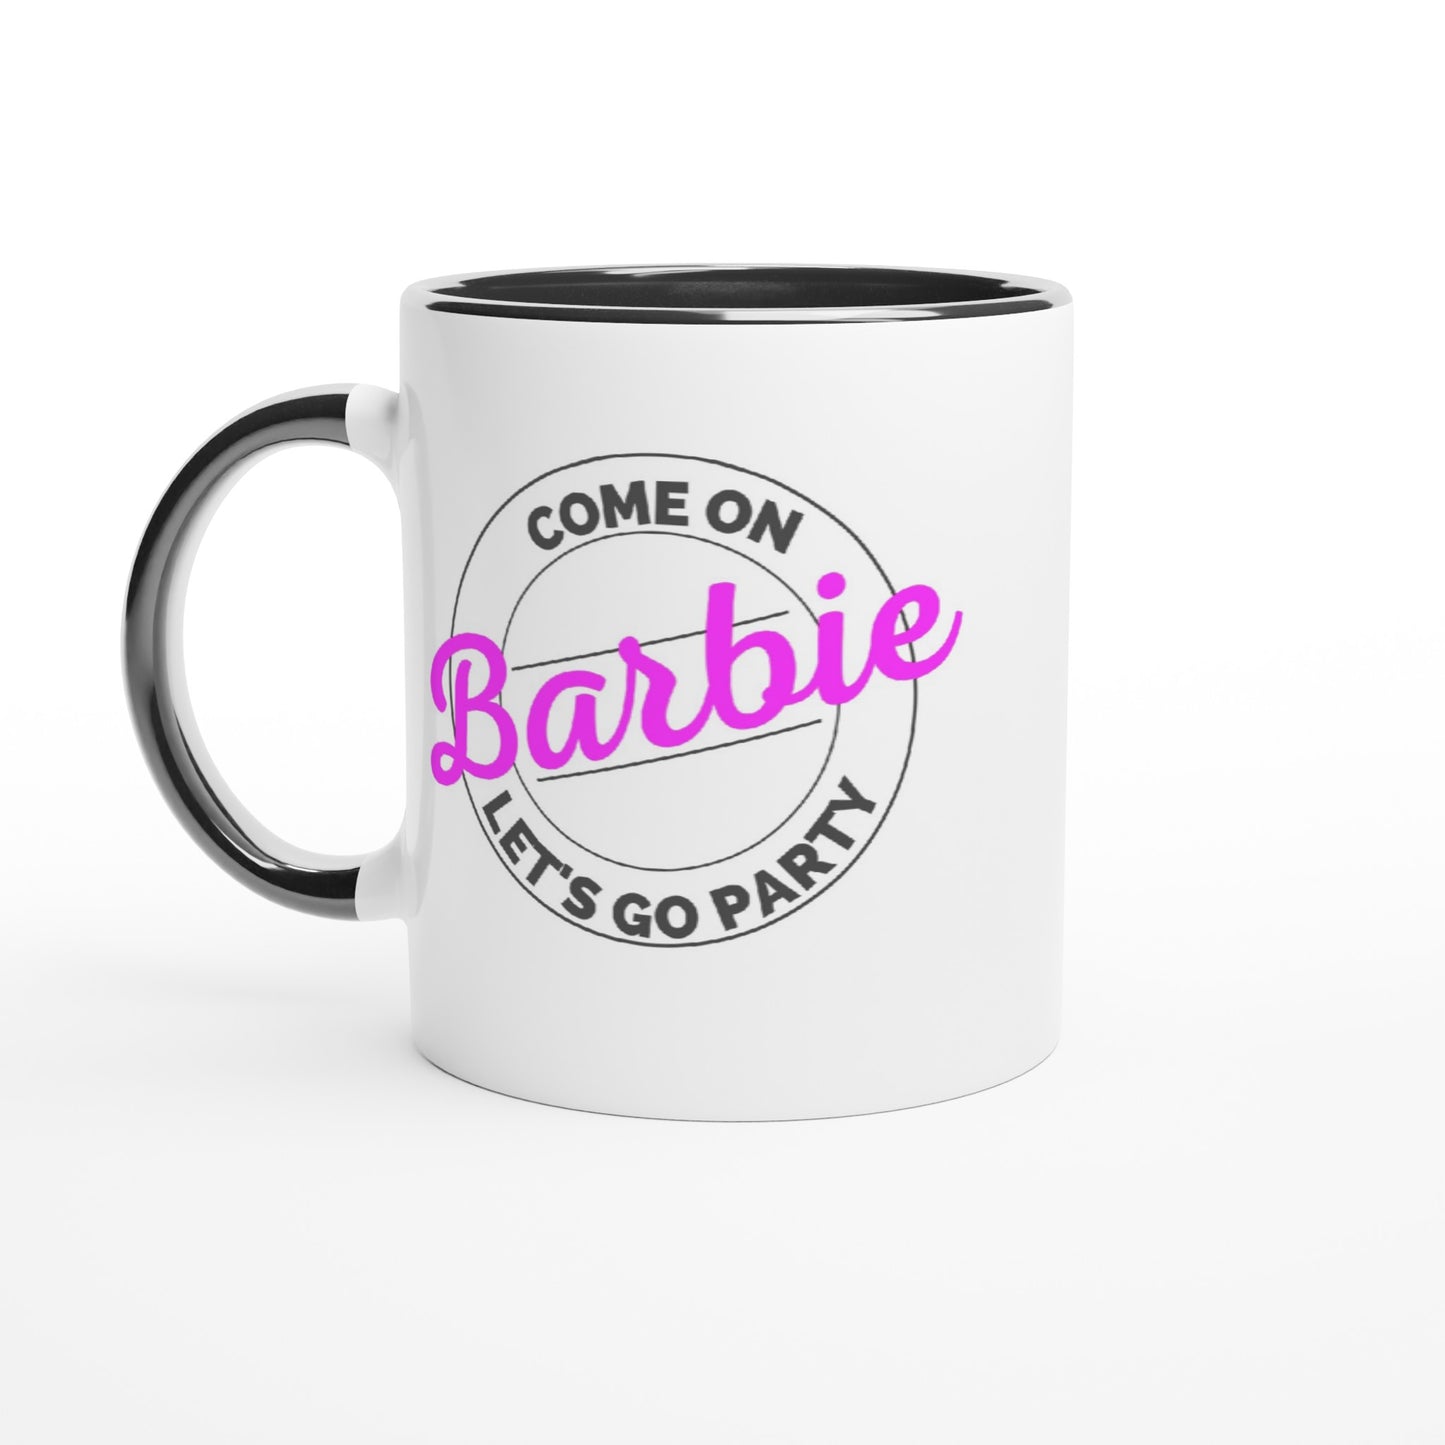 Come on Barbie - White 11oz Ceramic Mug with Color Inside